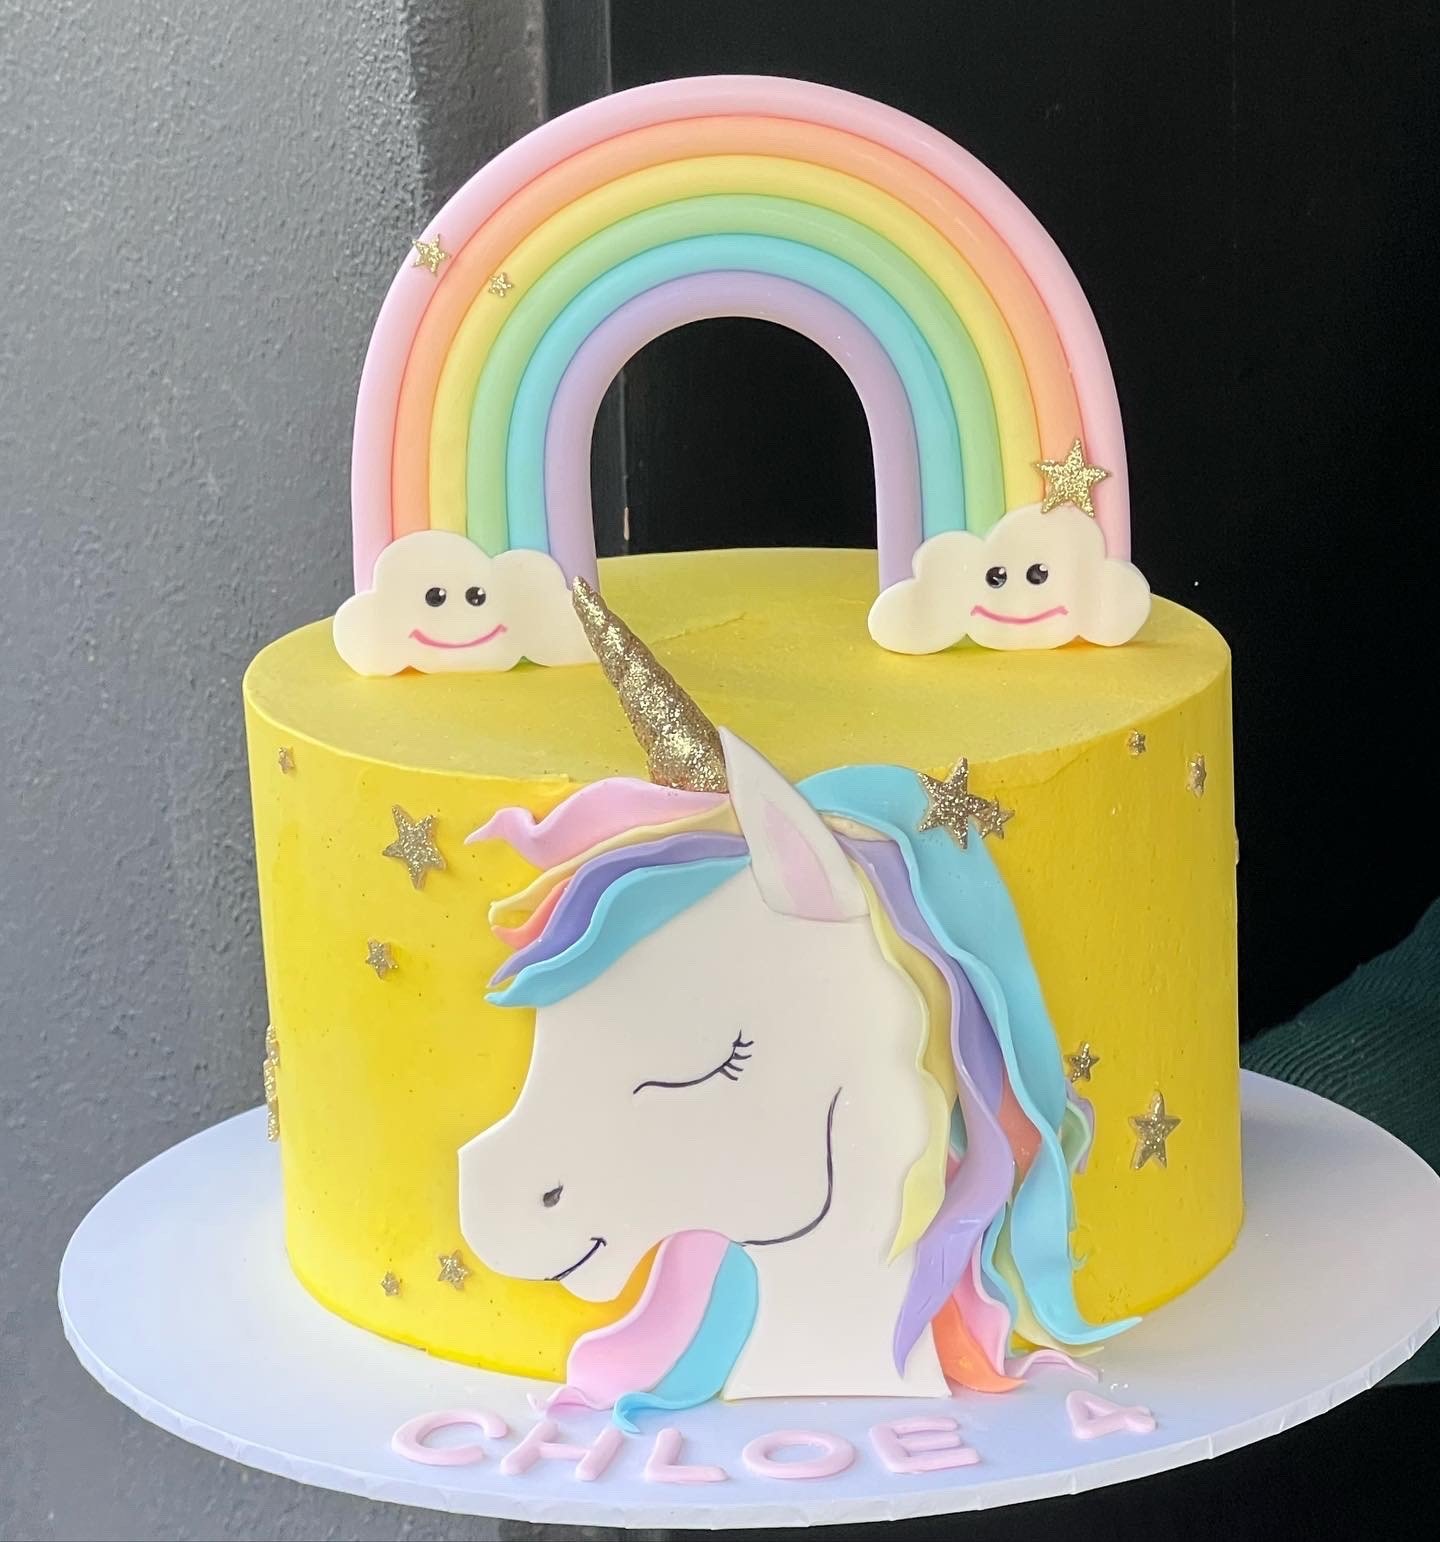 vanillapodspecialtycakes-cupcakes-noveltycupcakes-unicorn.jpg